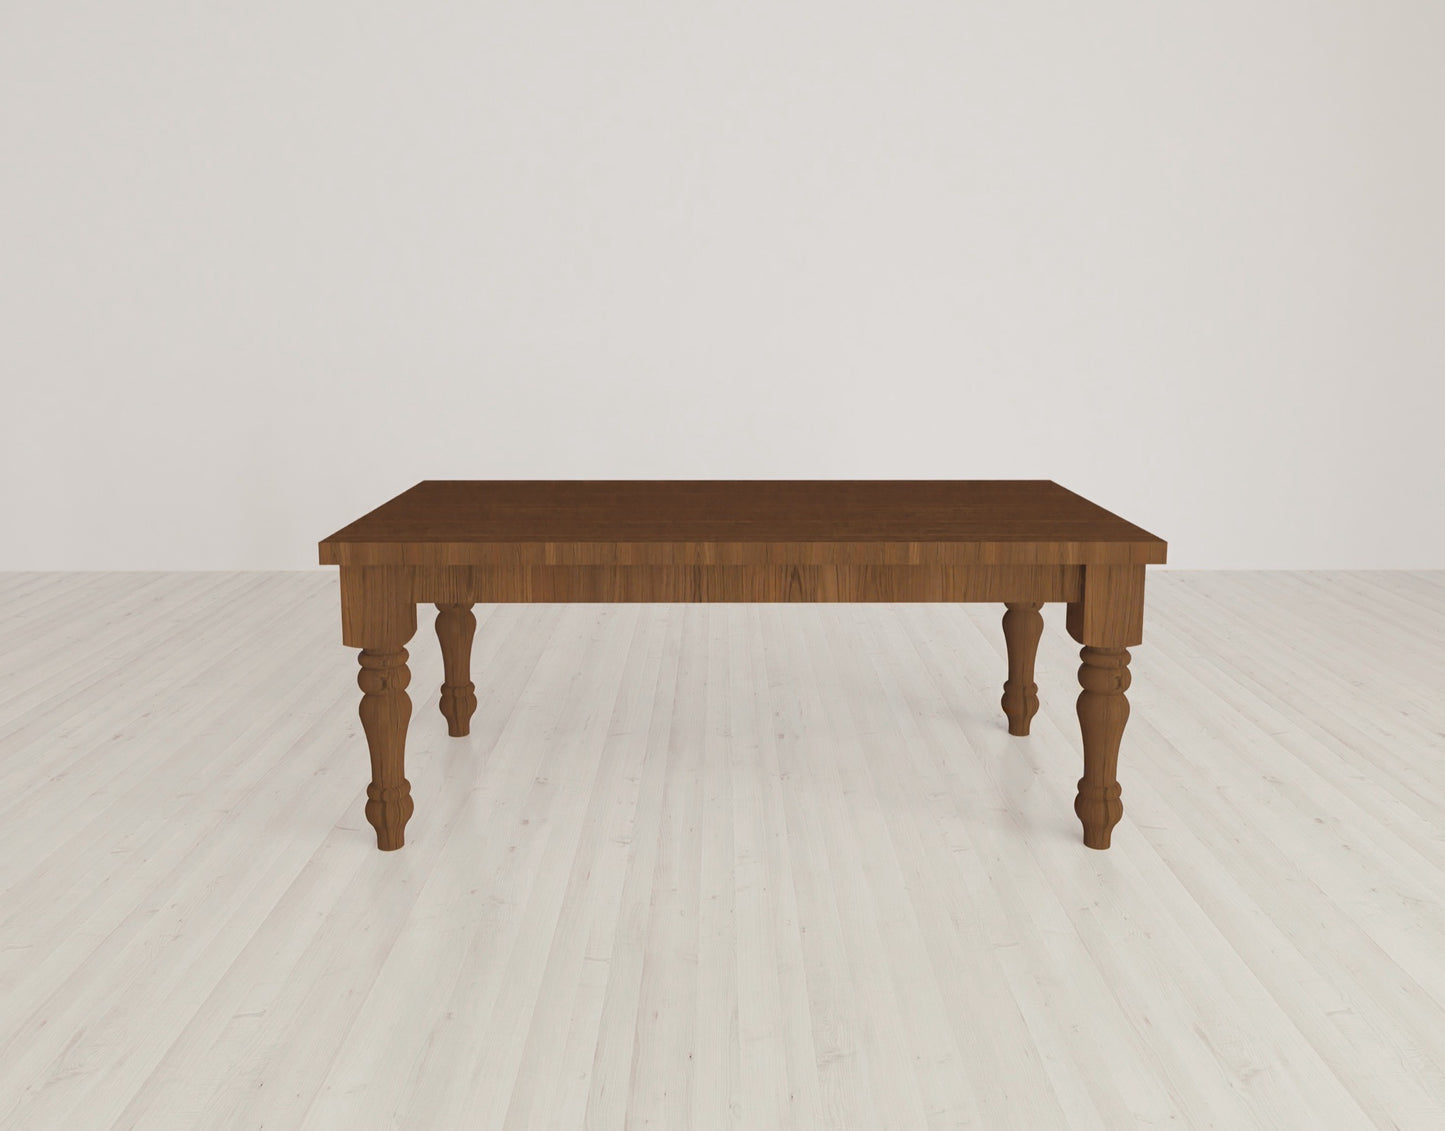 Turned Leg Table {Soft Wood}